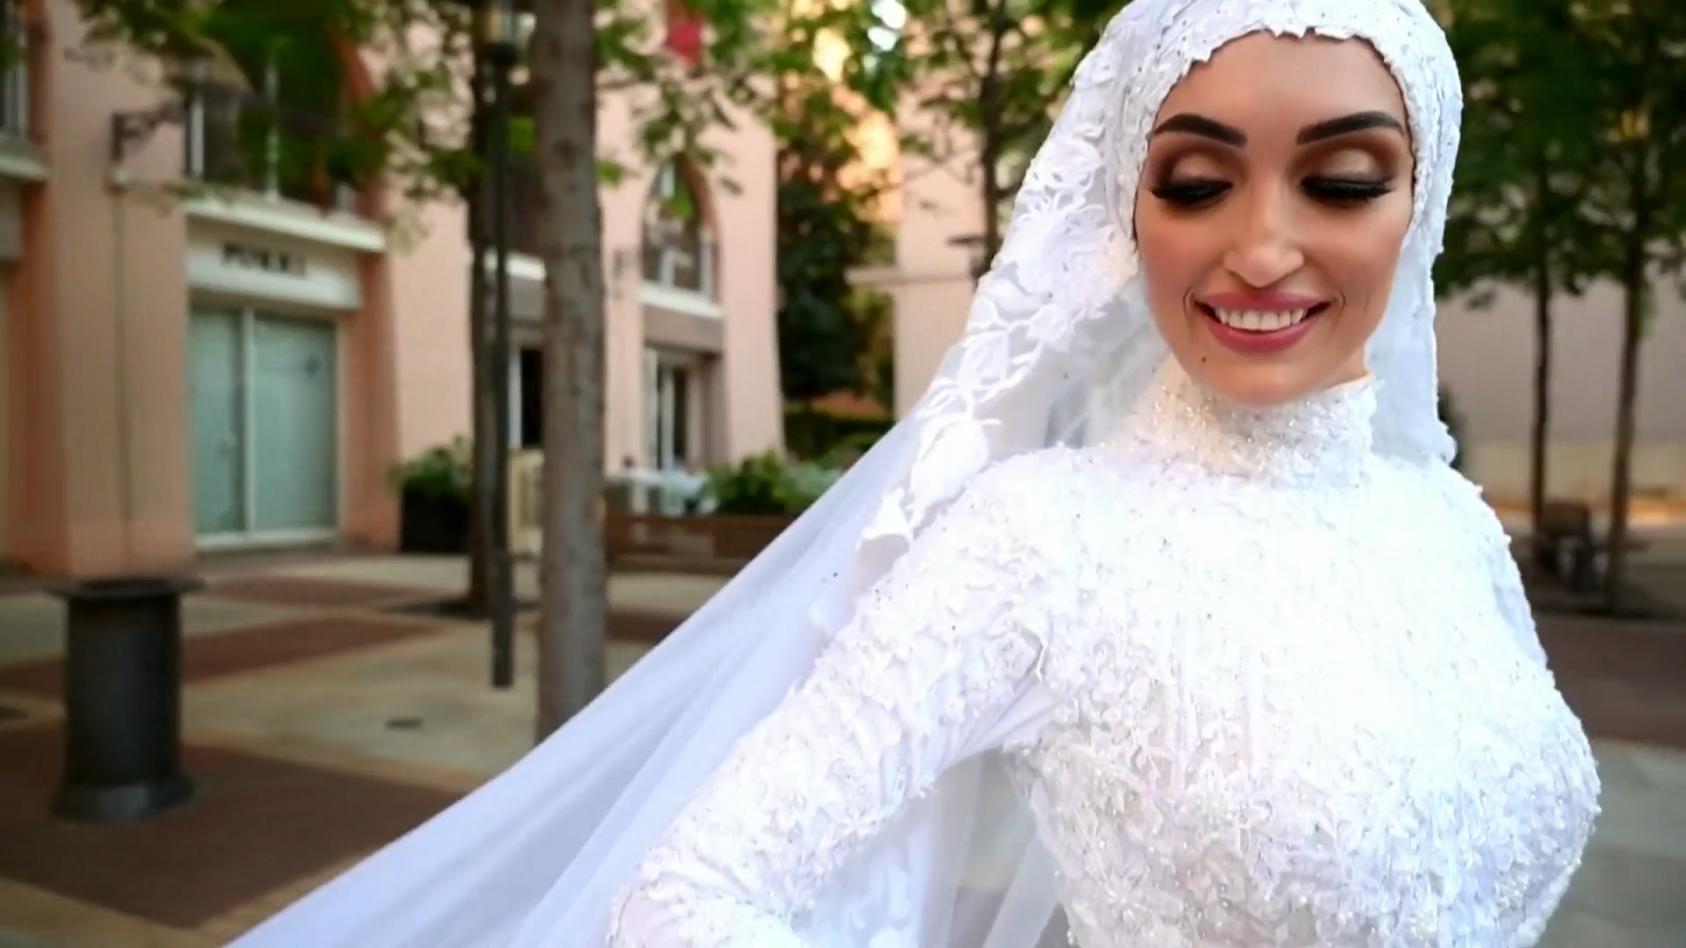 Explosion von Beirut unterbricht Hochzeitsshooting Die Aufnahmen zeigen die Wucht der Druckwelle